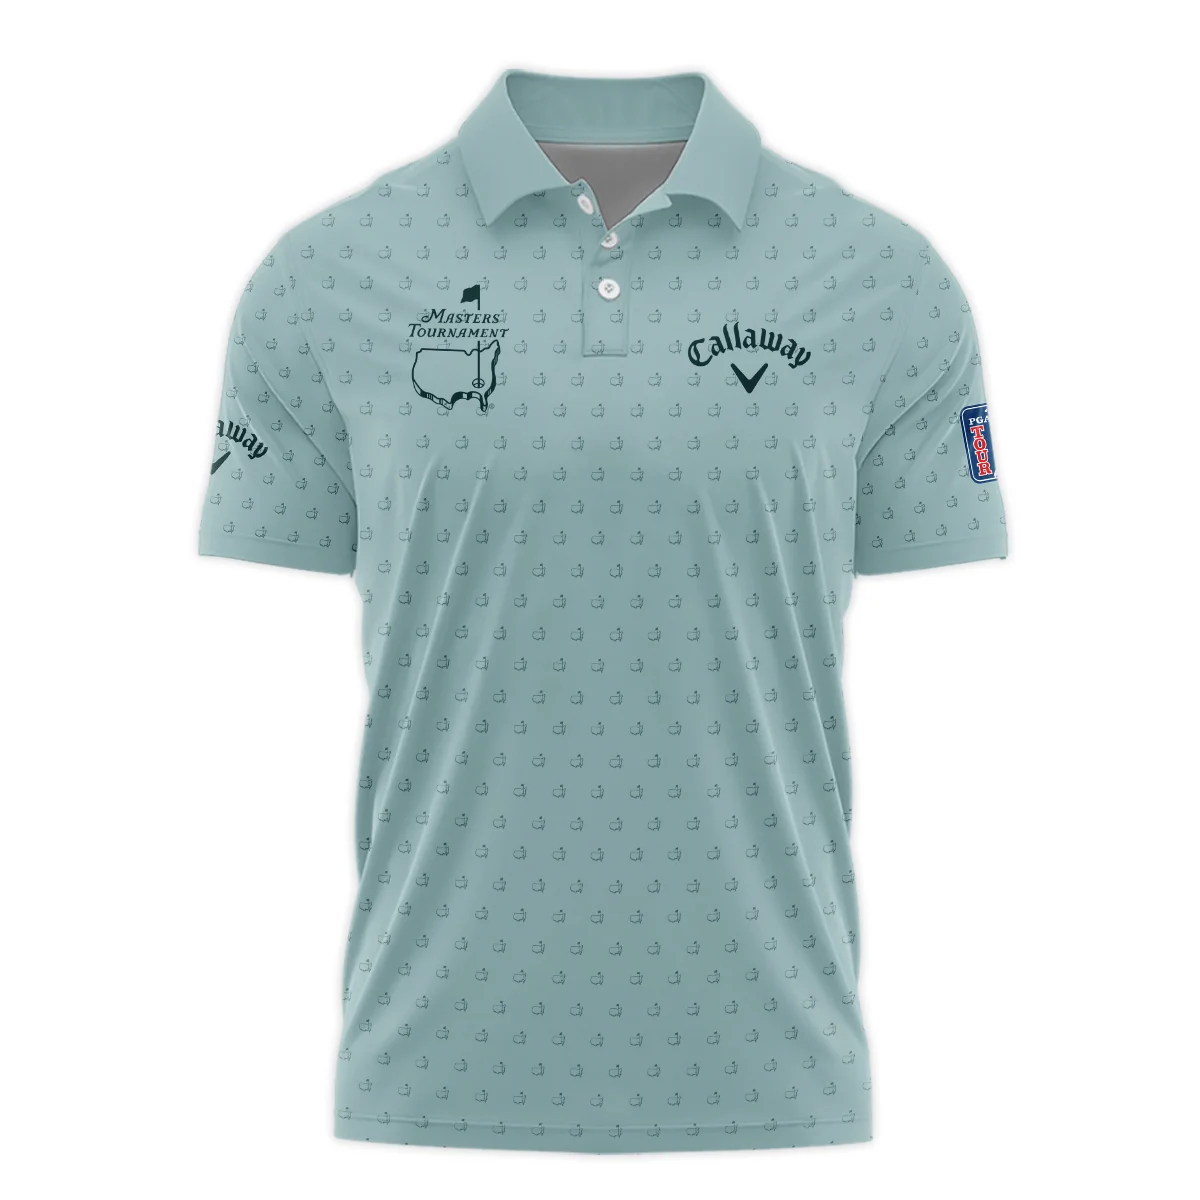 Golf Pattern Masters Tournament Callaway Zipper Hoodie Shirt Cyan Pattern All Over Print Zipper Hoodie Shirt